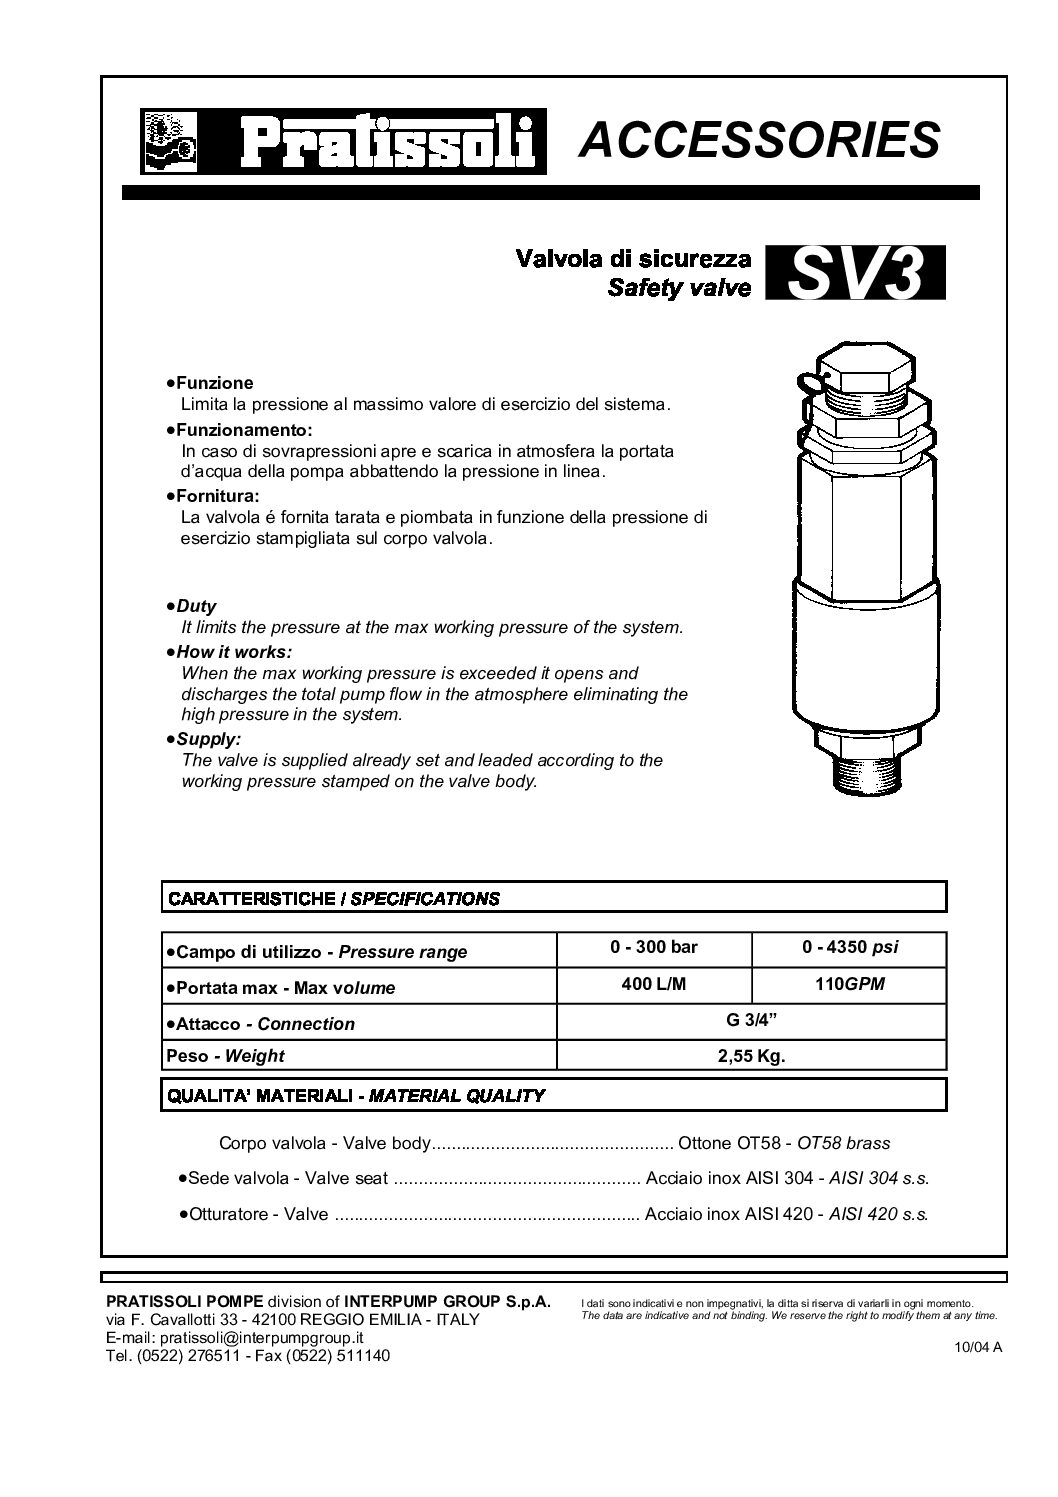 Pratissoli SV3 Safety Valve technical data